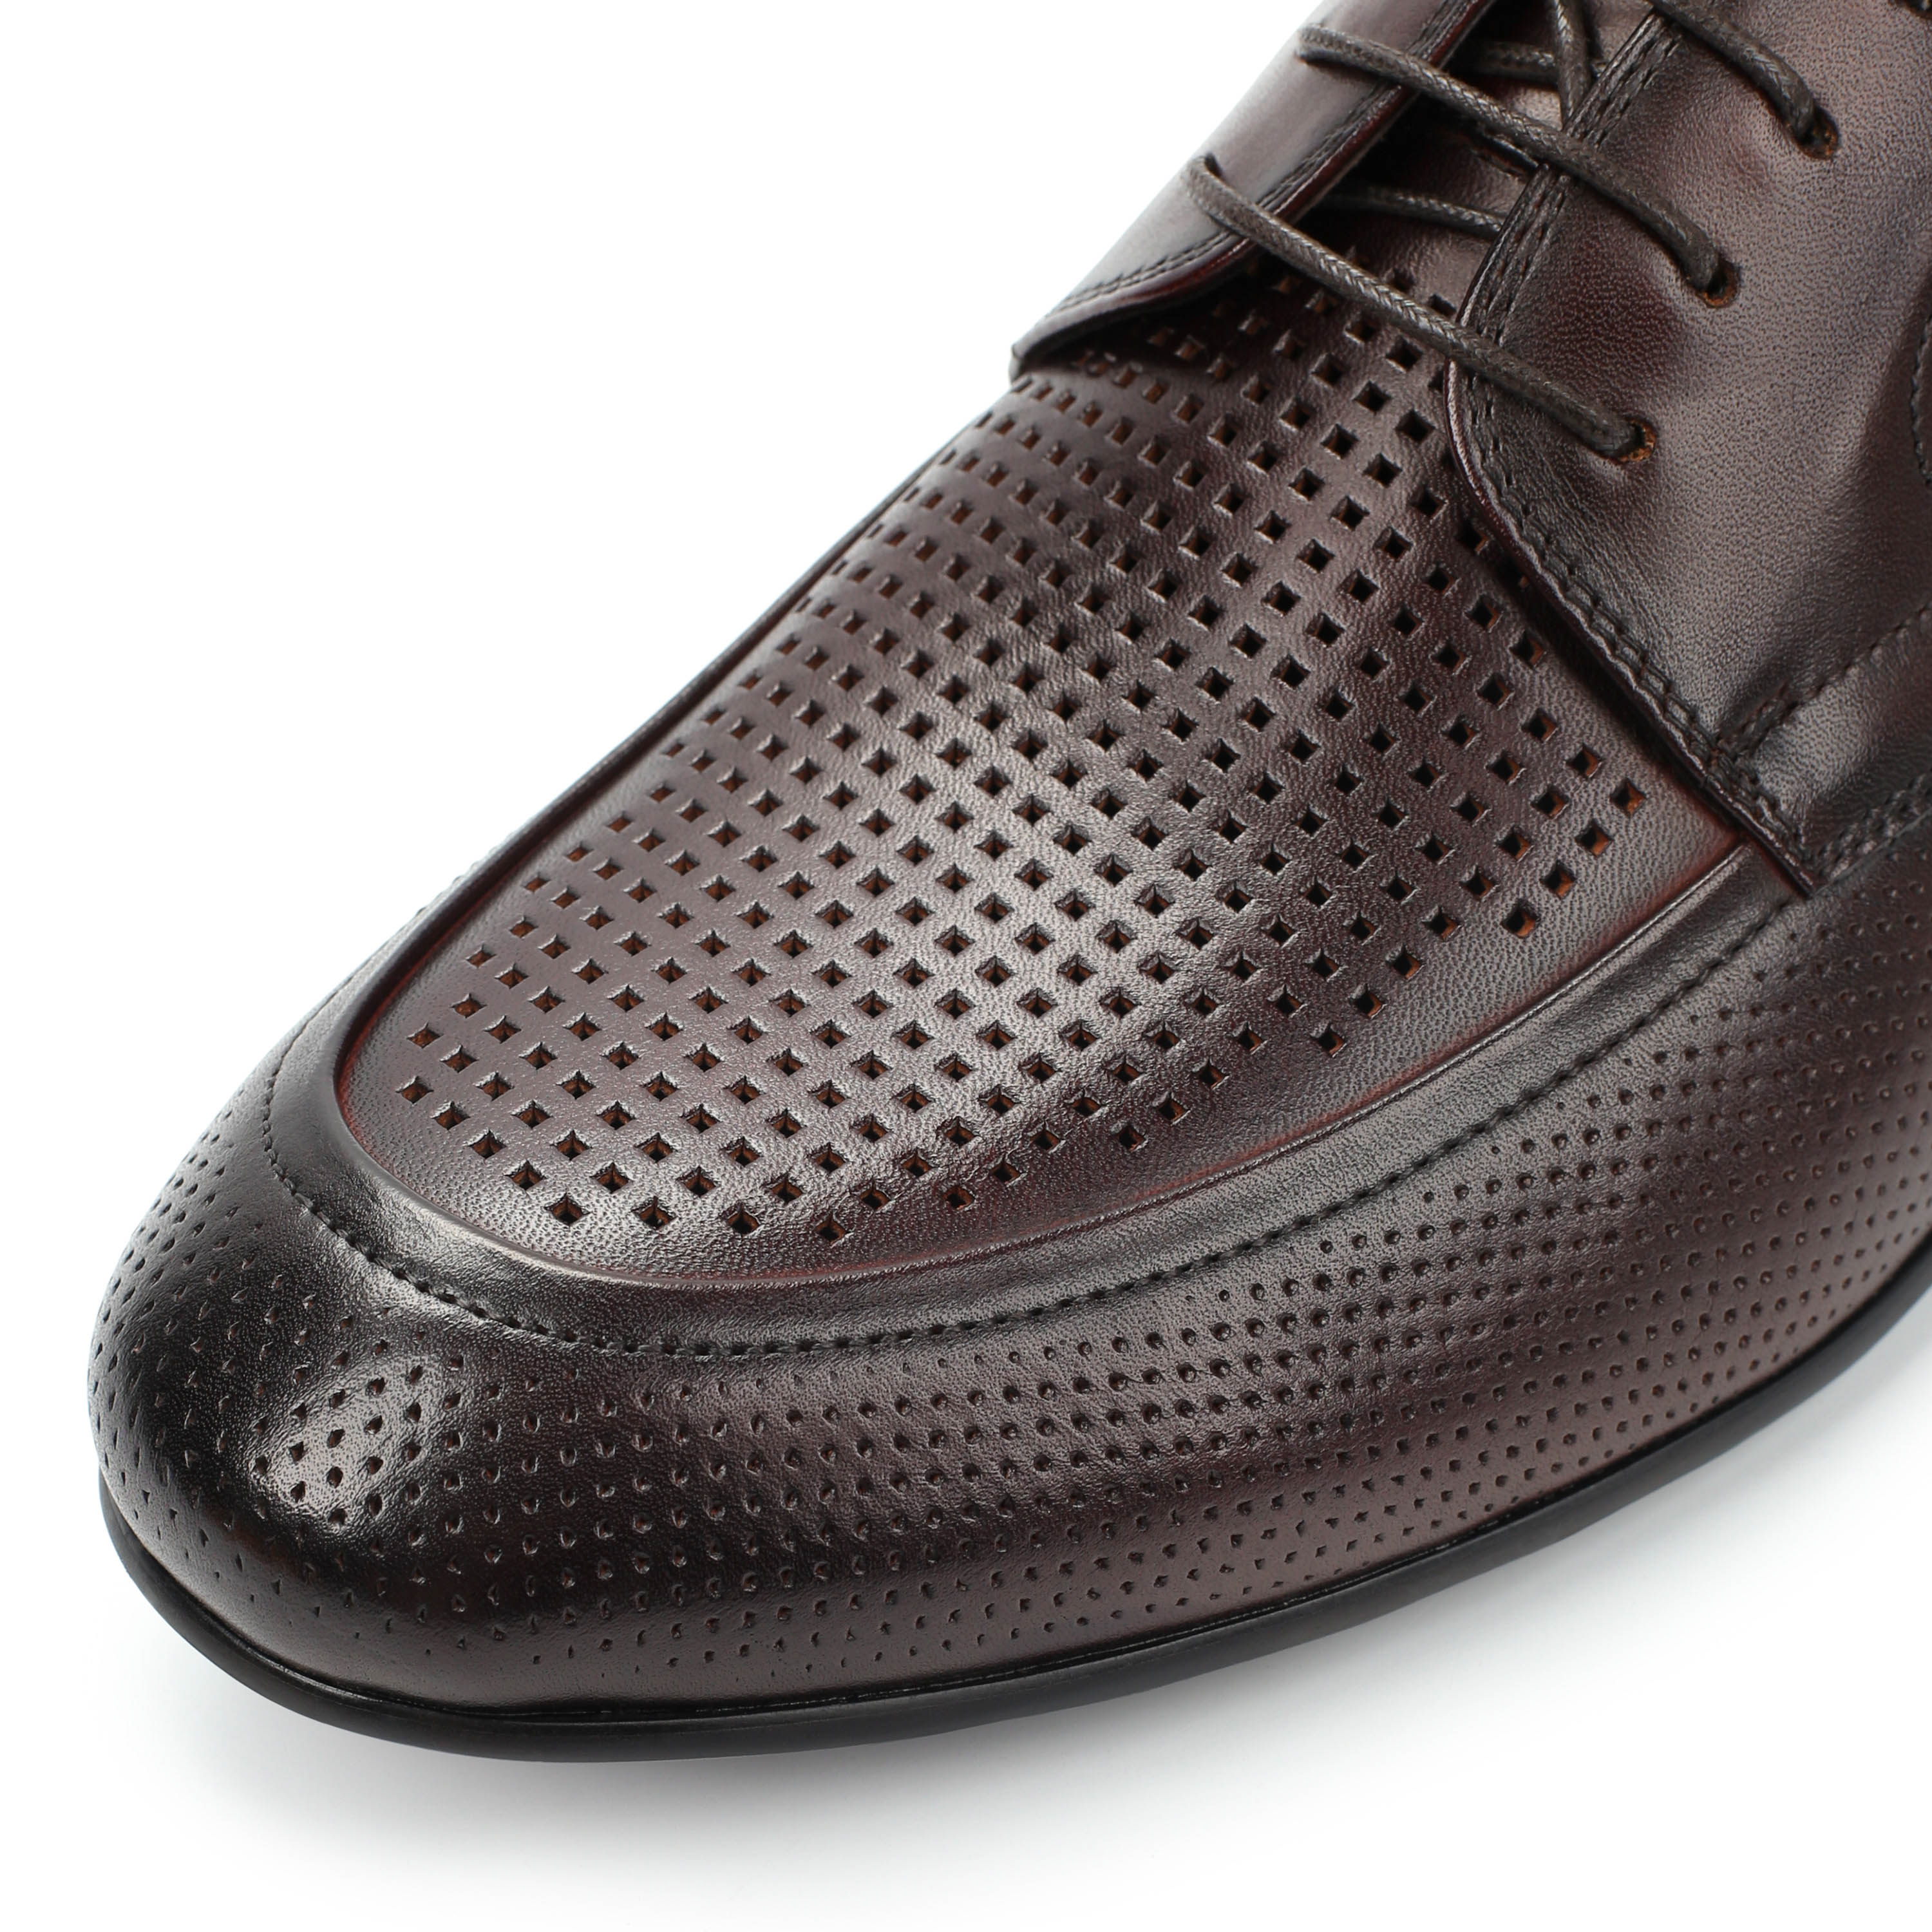 Туфли Thomas Munz 058-115B-1109 058-115B-1109, цвет коричневый, размер 41 полуботинки - фото 6